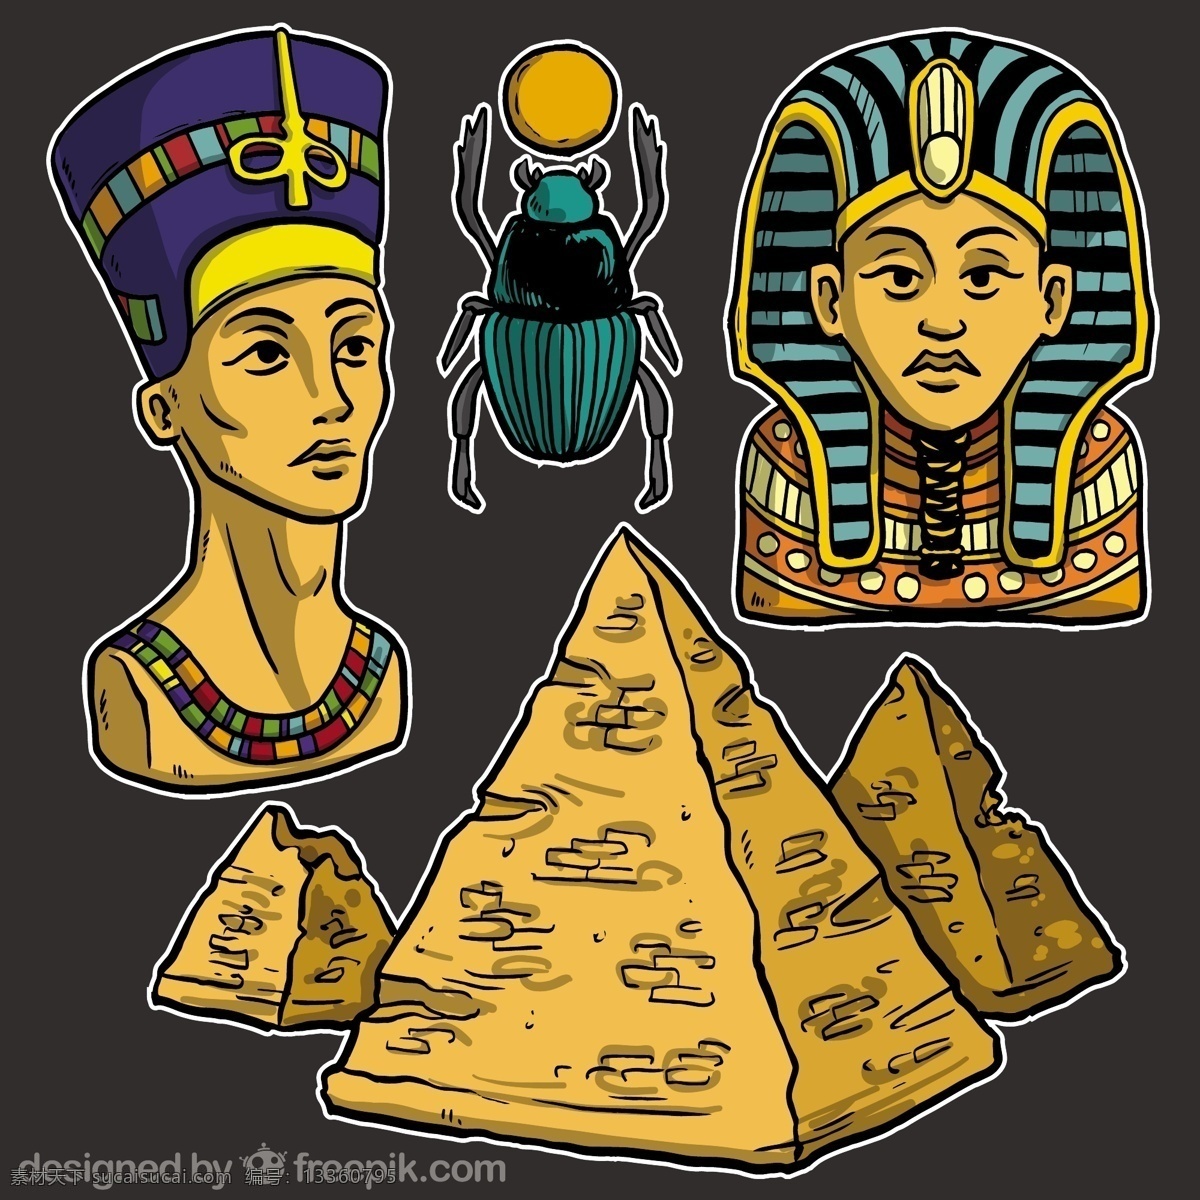 埃及 文化 插图 沙漠 沙 金字塔 埃及文化 神 古 绿洲 法老 狮身人面像 神话 荷鲁斯 阿努比斯 神秘 象形文字 黑色